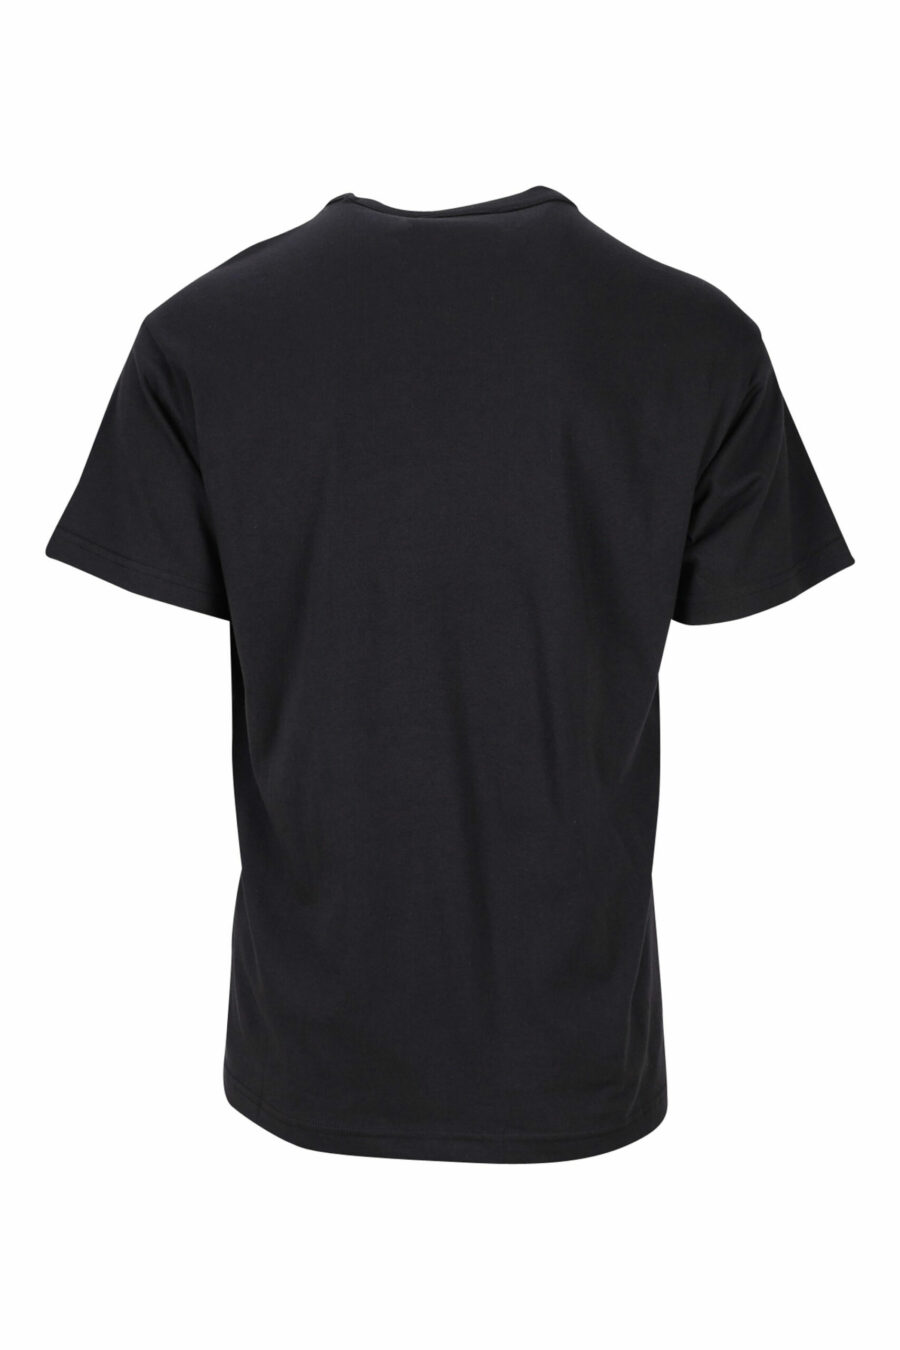 T-shirt noir avec maxilogo monochrome "piece number" - 8052019468755 1 scaled